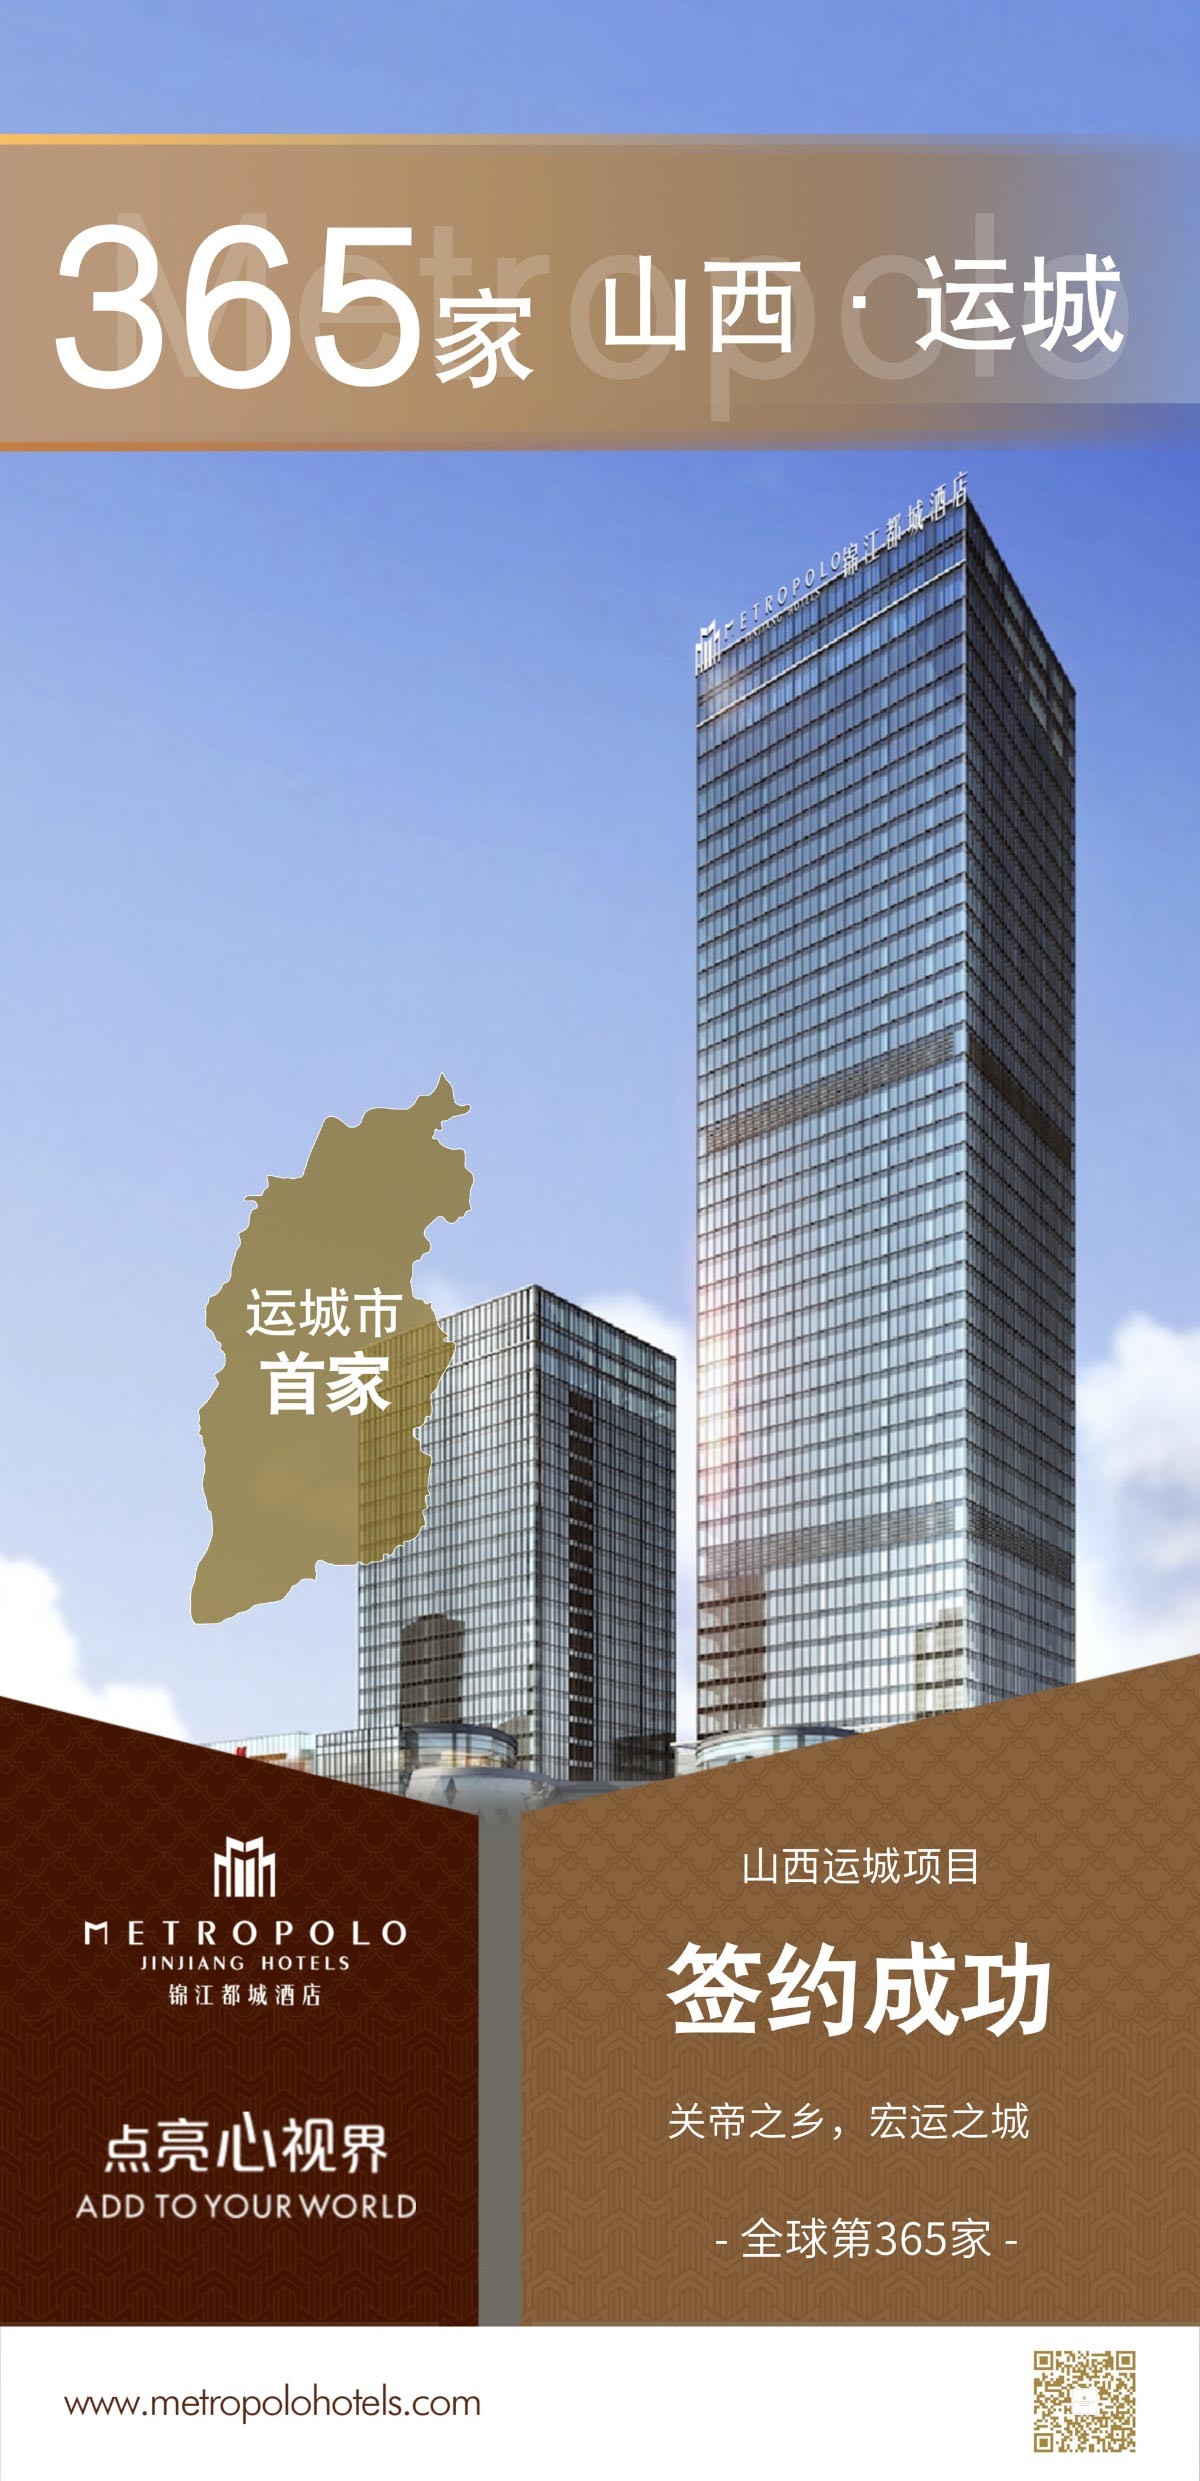 新店签约丨锦江都城酒店全球第365家酒店--山西省运城市首店项目签约成功